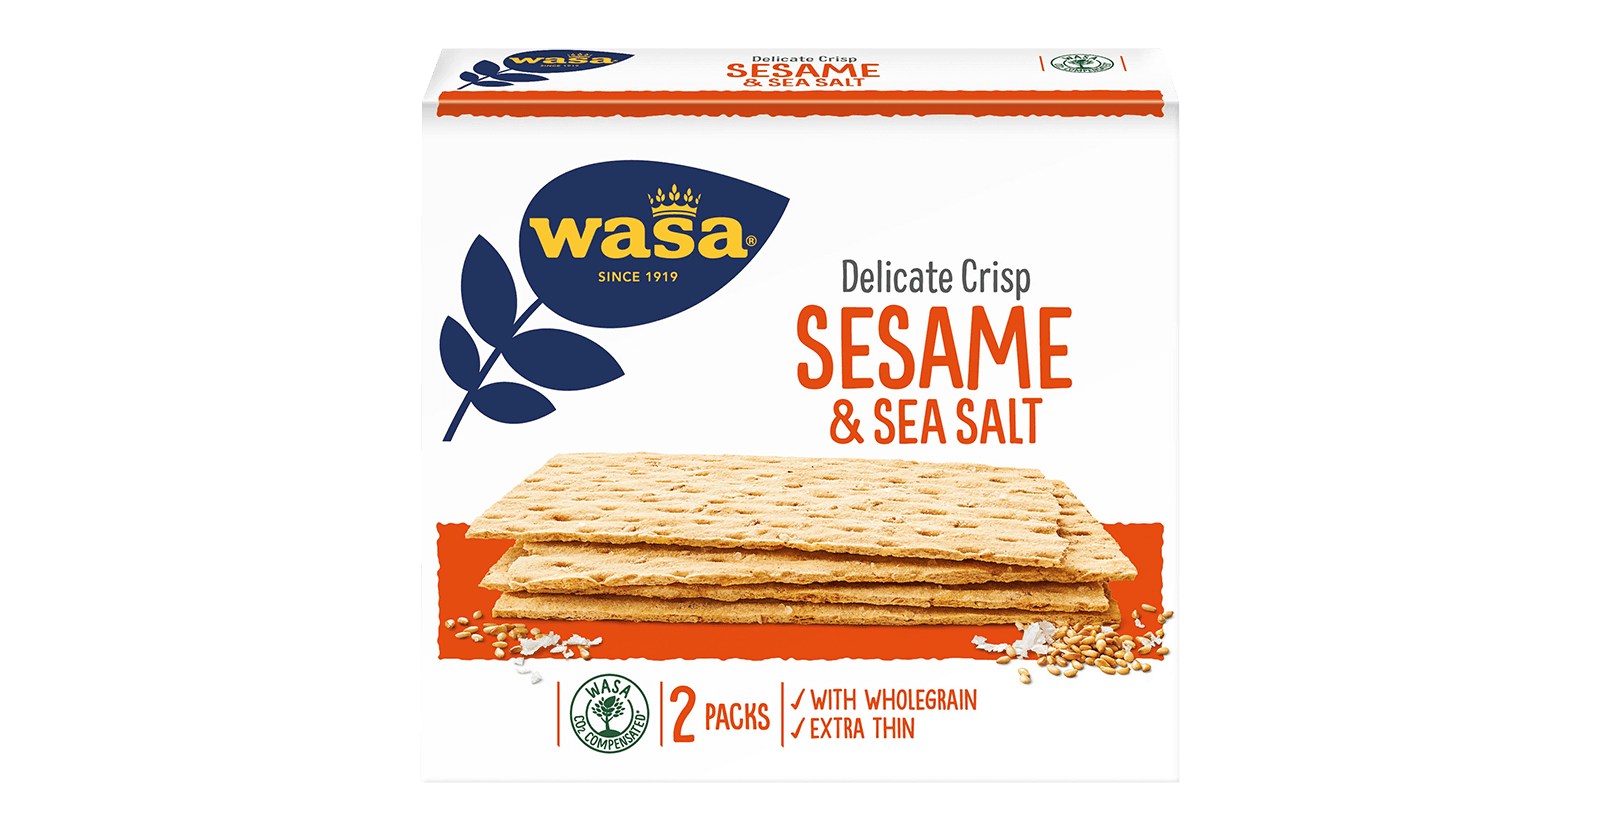 Delicate Crisp Sesame & Sea Salt